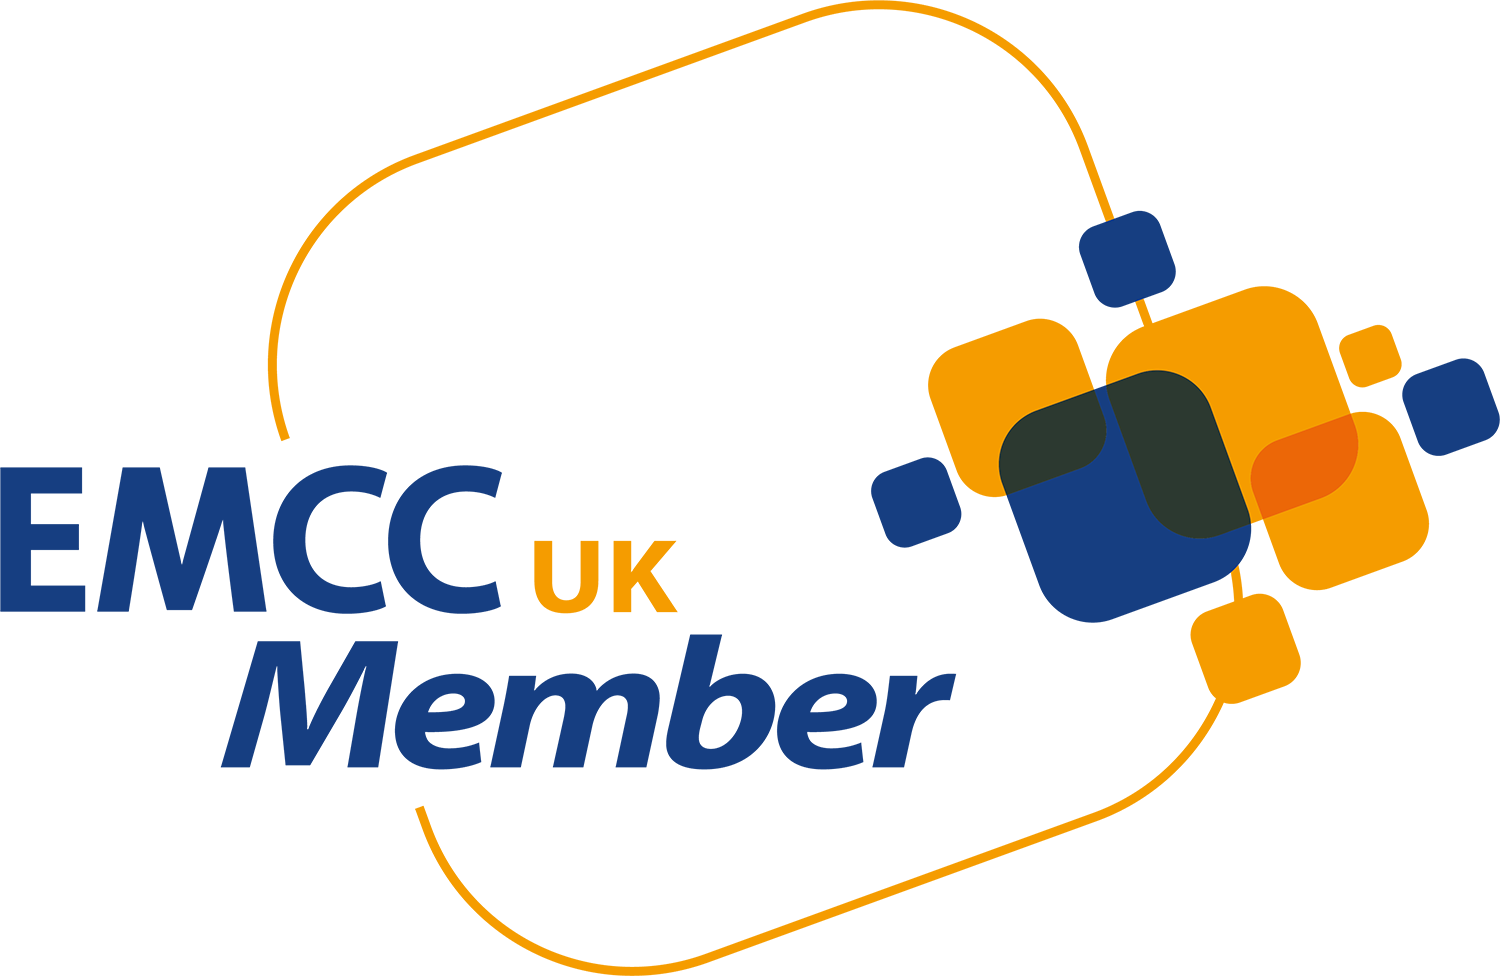 emcc-uk-member-logo